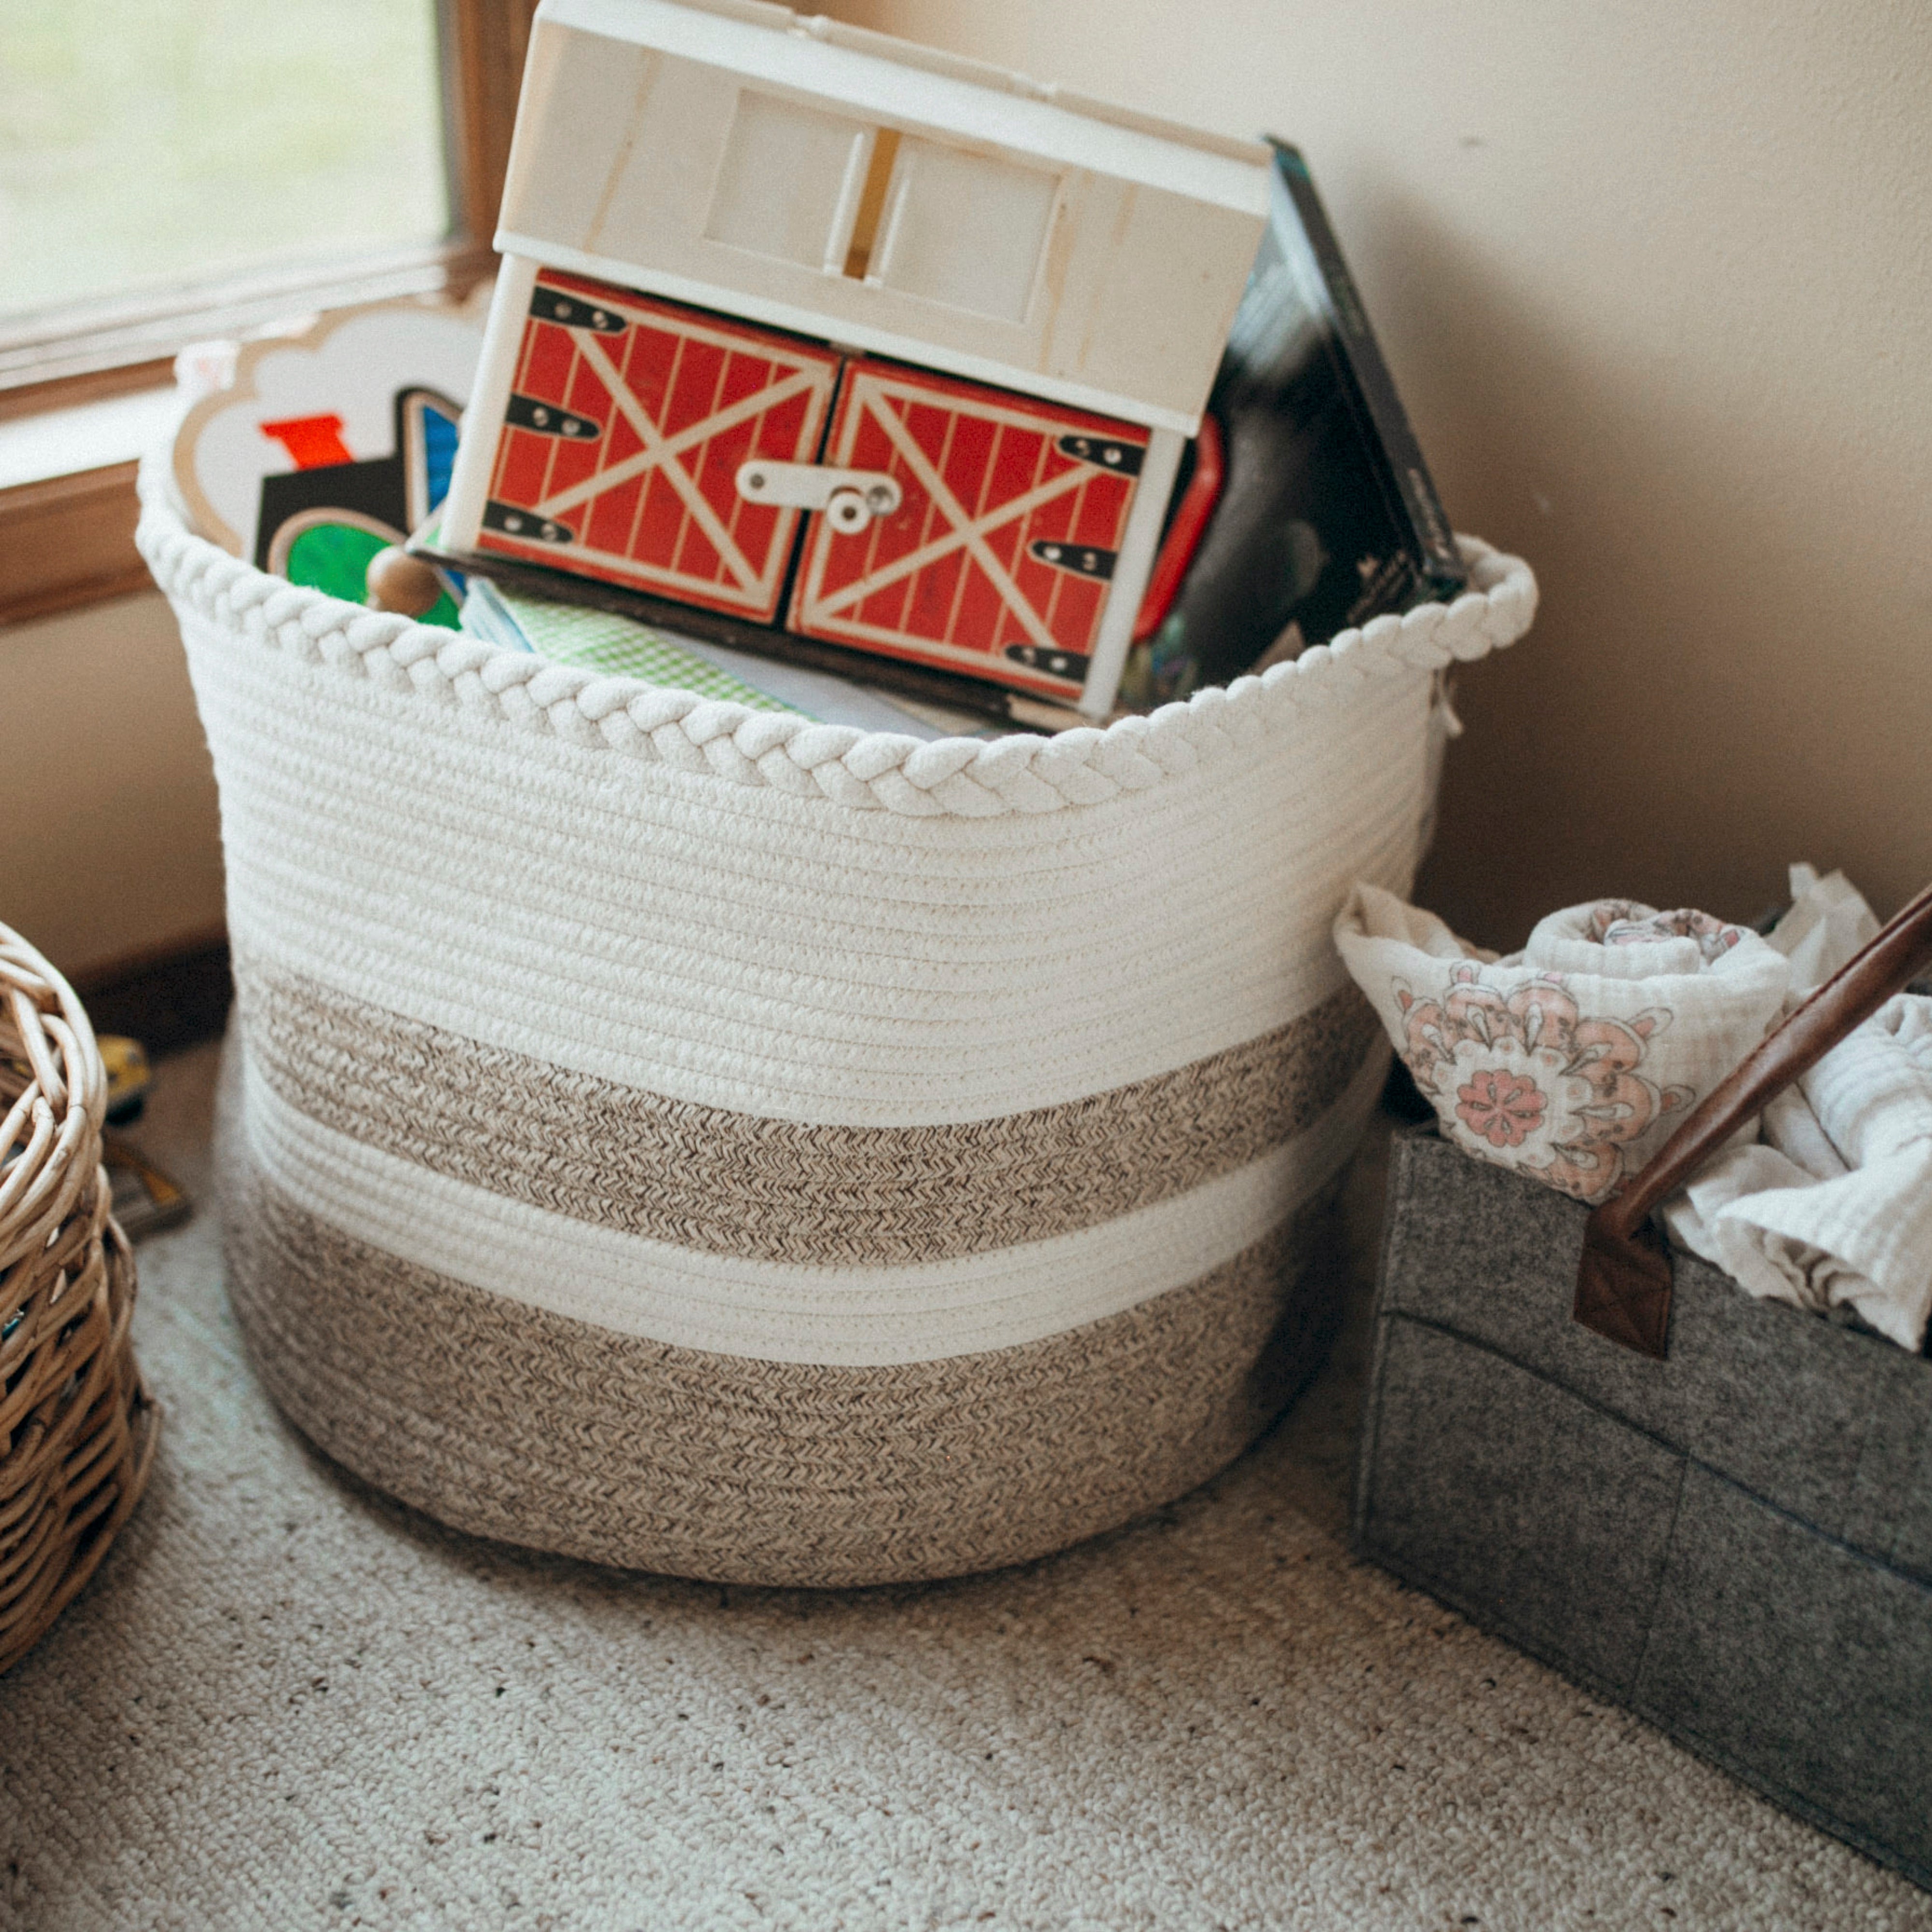 Cotton Rope Basket - Premium Blanket Basket Living Room Organization - Rope  Baskets For Storage & Function - Decorative Basket To Eliminate Clutter -  Ideal for Toy Basket - Plant Basket - Throw Basket (Natural) – Sanwacraft